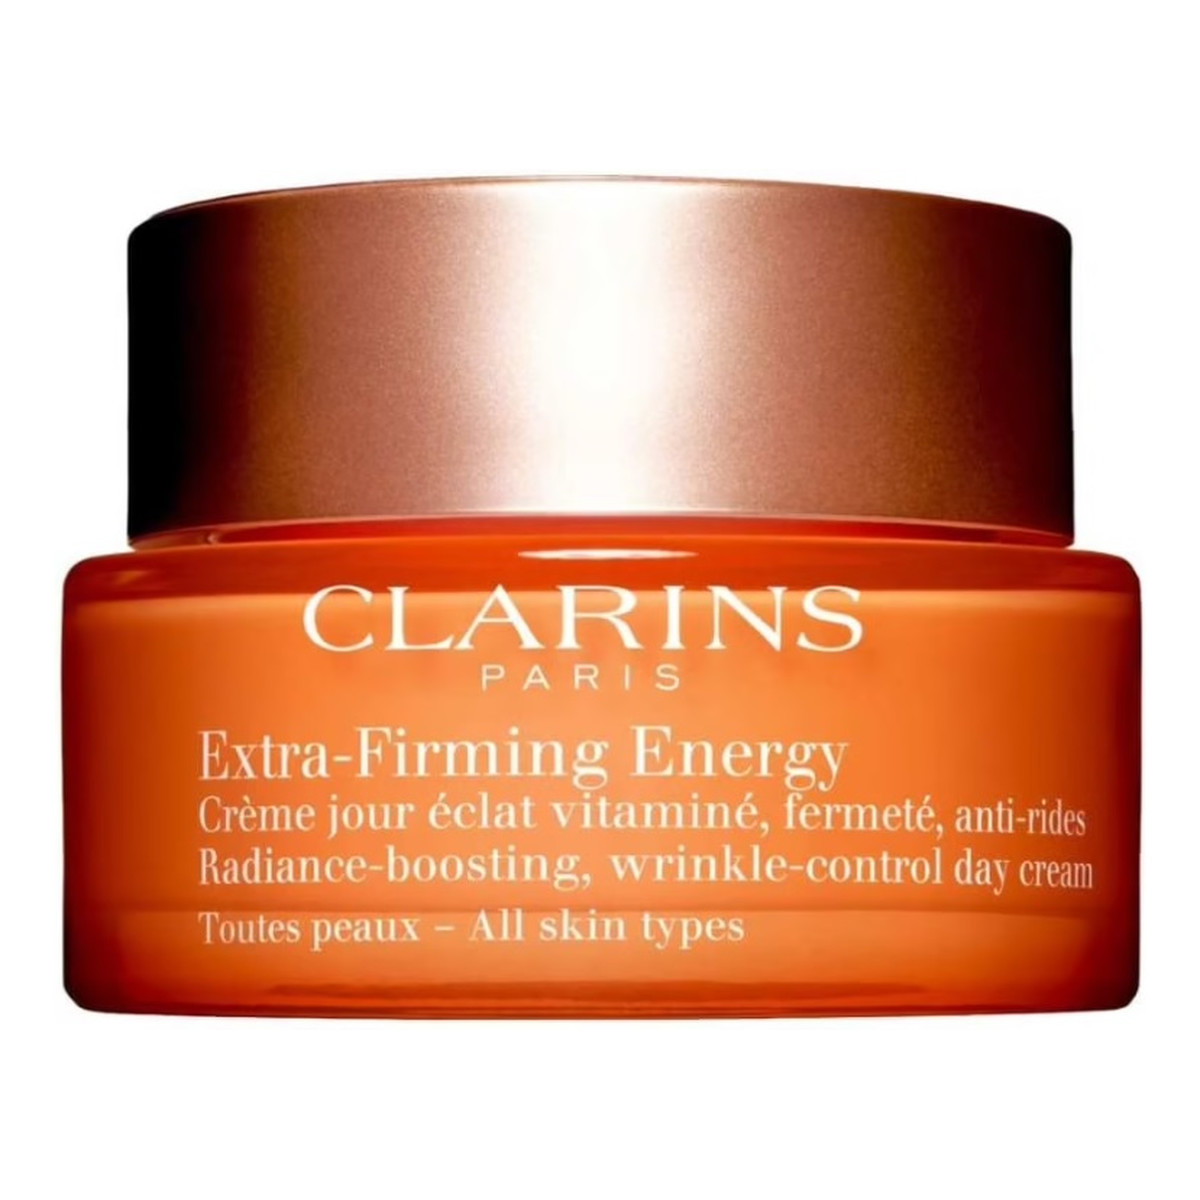 Clarins Extra-Firming Energy Day Cream Krem na dzień 50ml